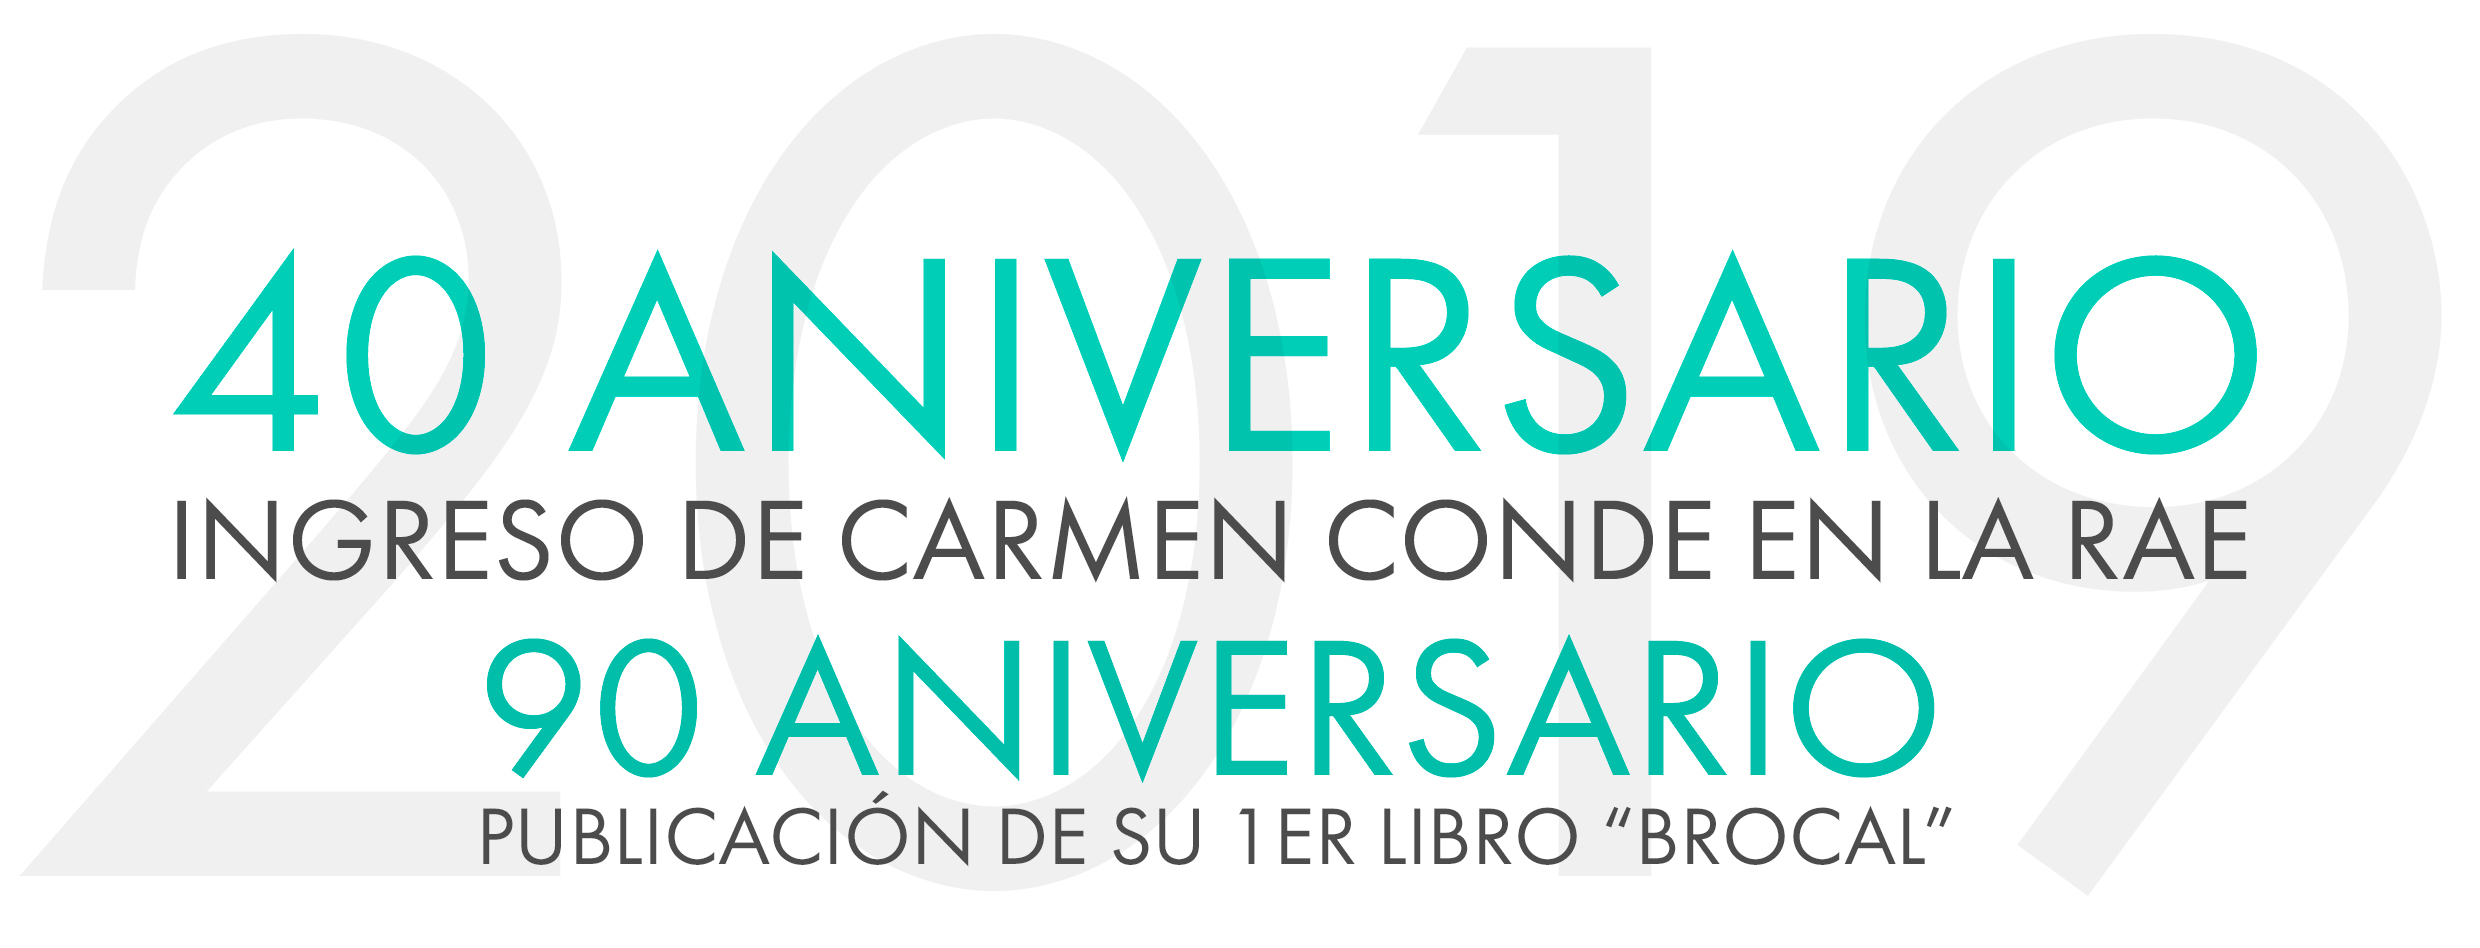 40 Aniversario Ingreso de Carmen Conde en la RAE